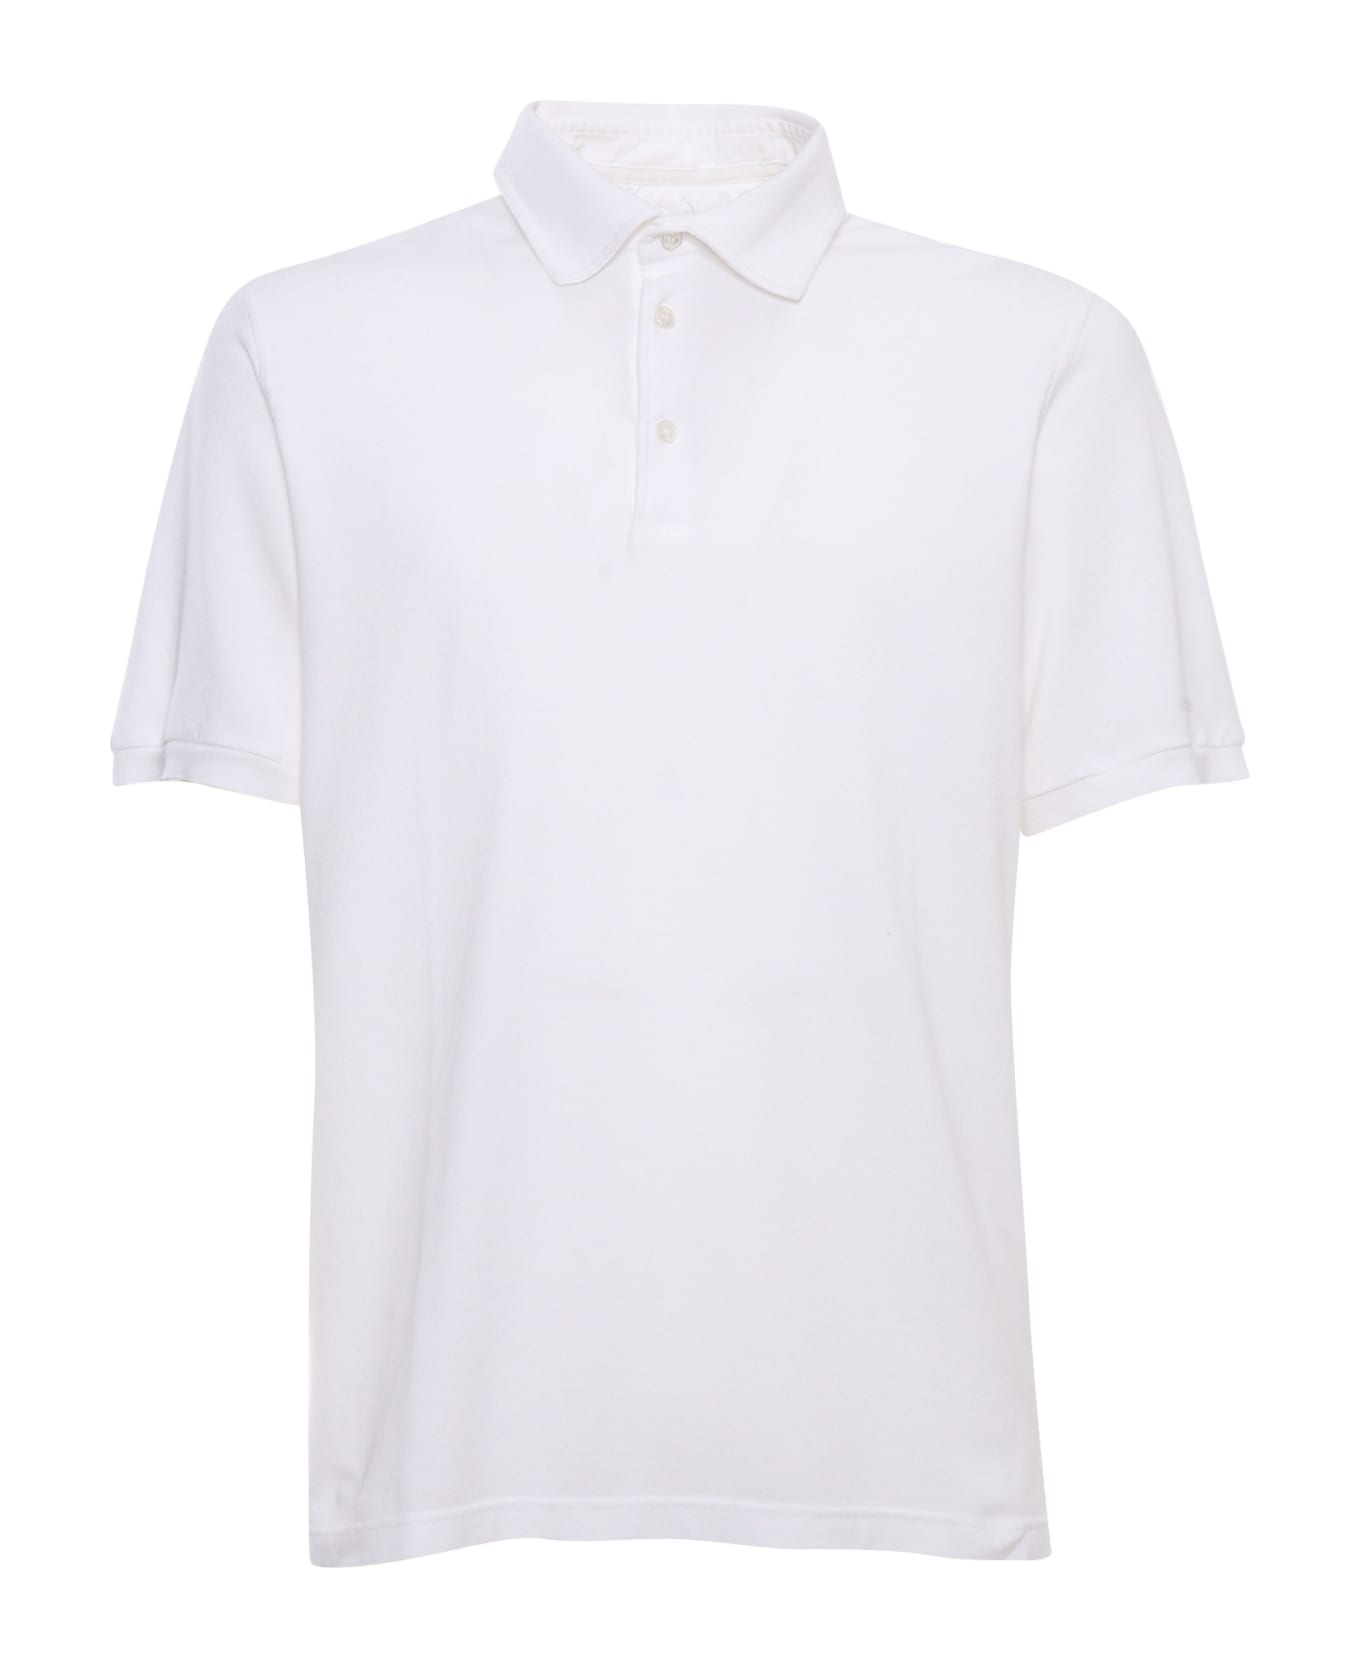 Fedeli White Piquet Polo - WHITE ポロシャツ